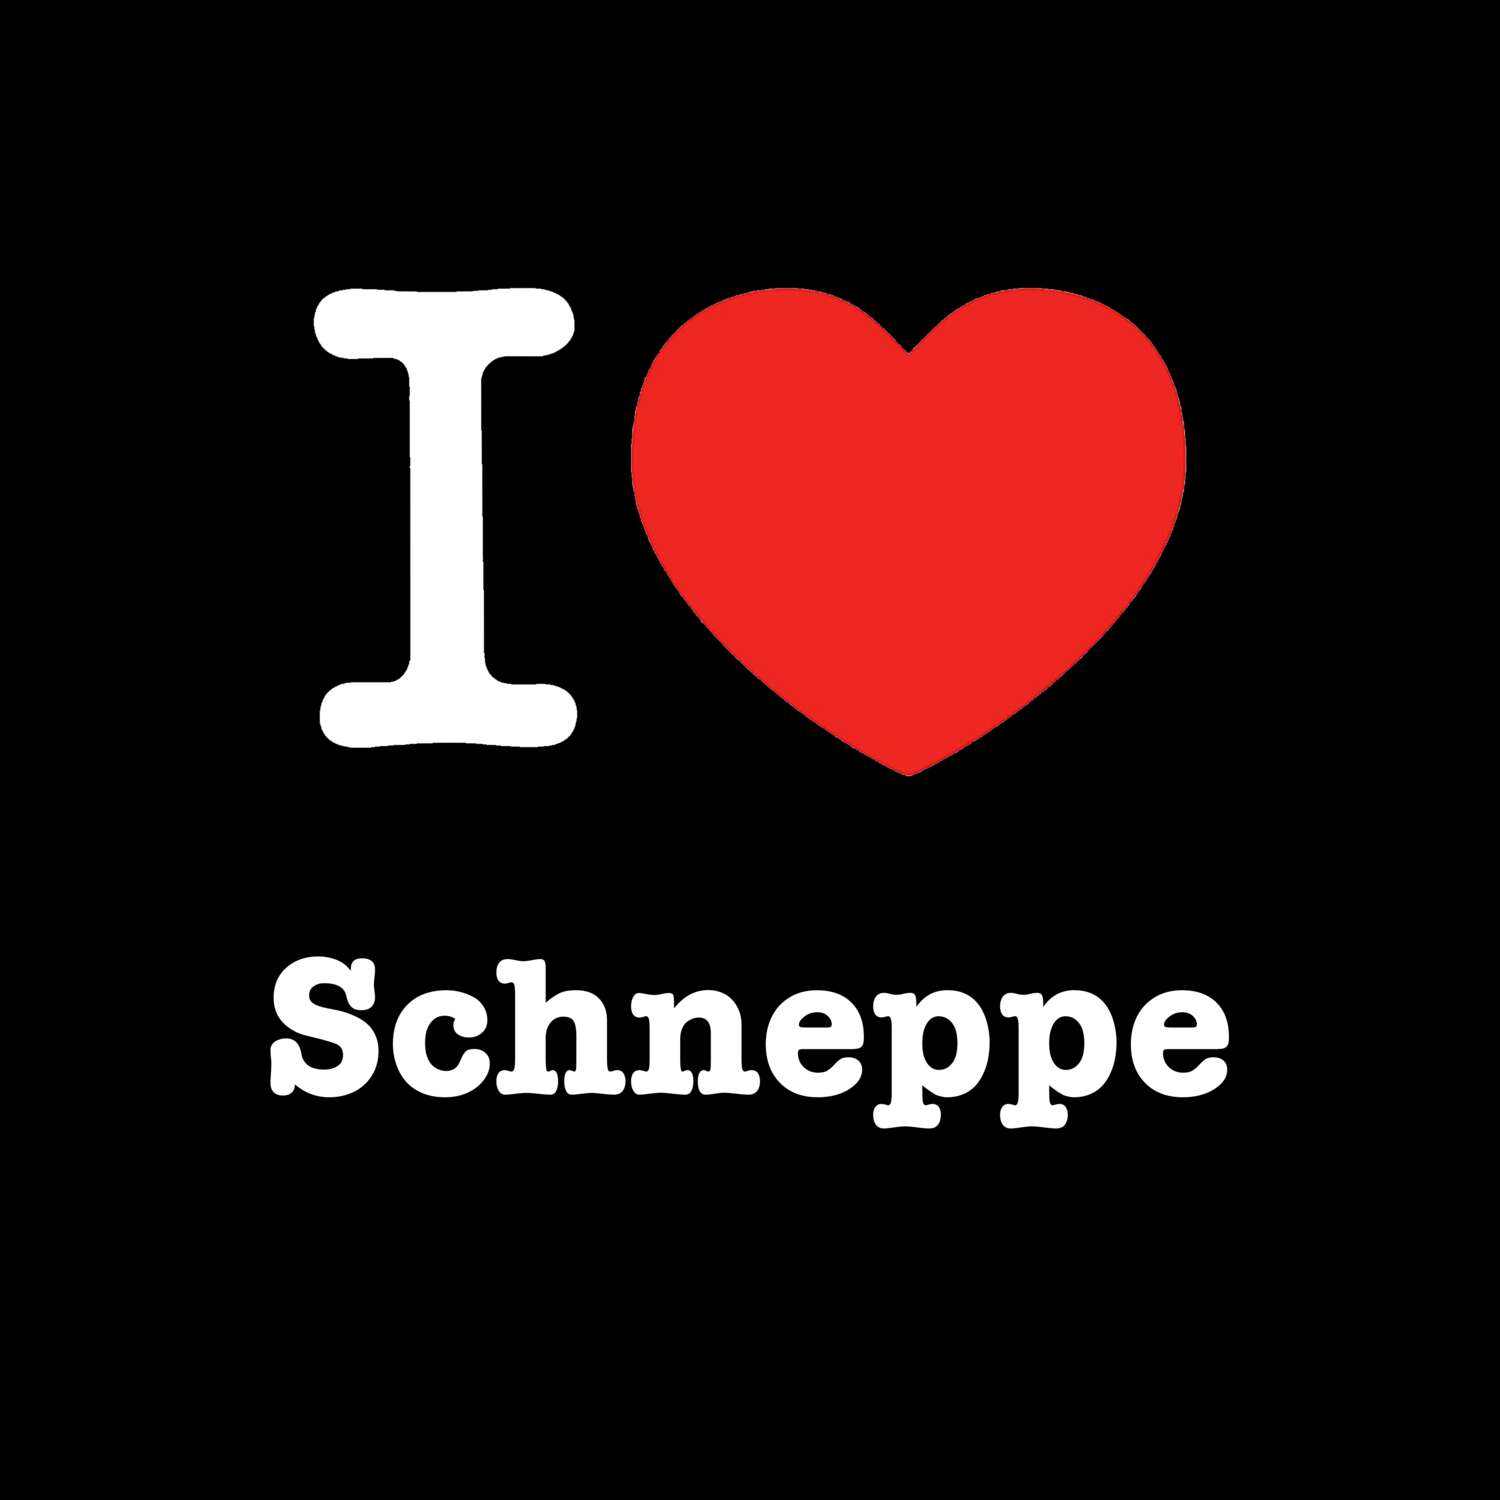 Schneppe T-Shirt »I love«